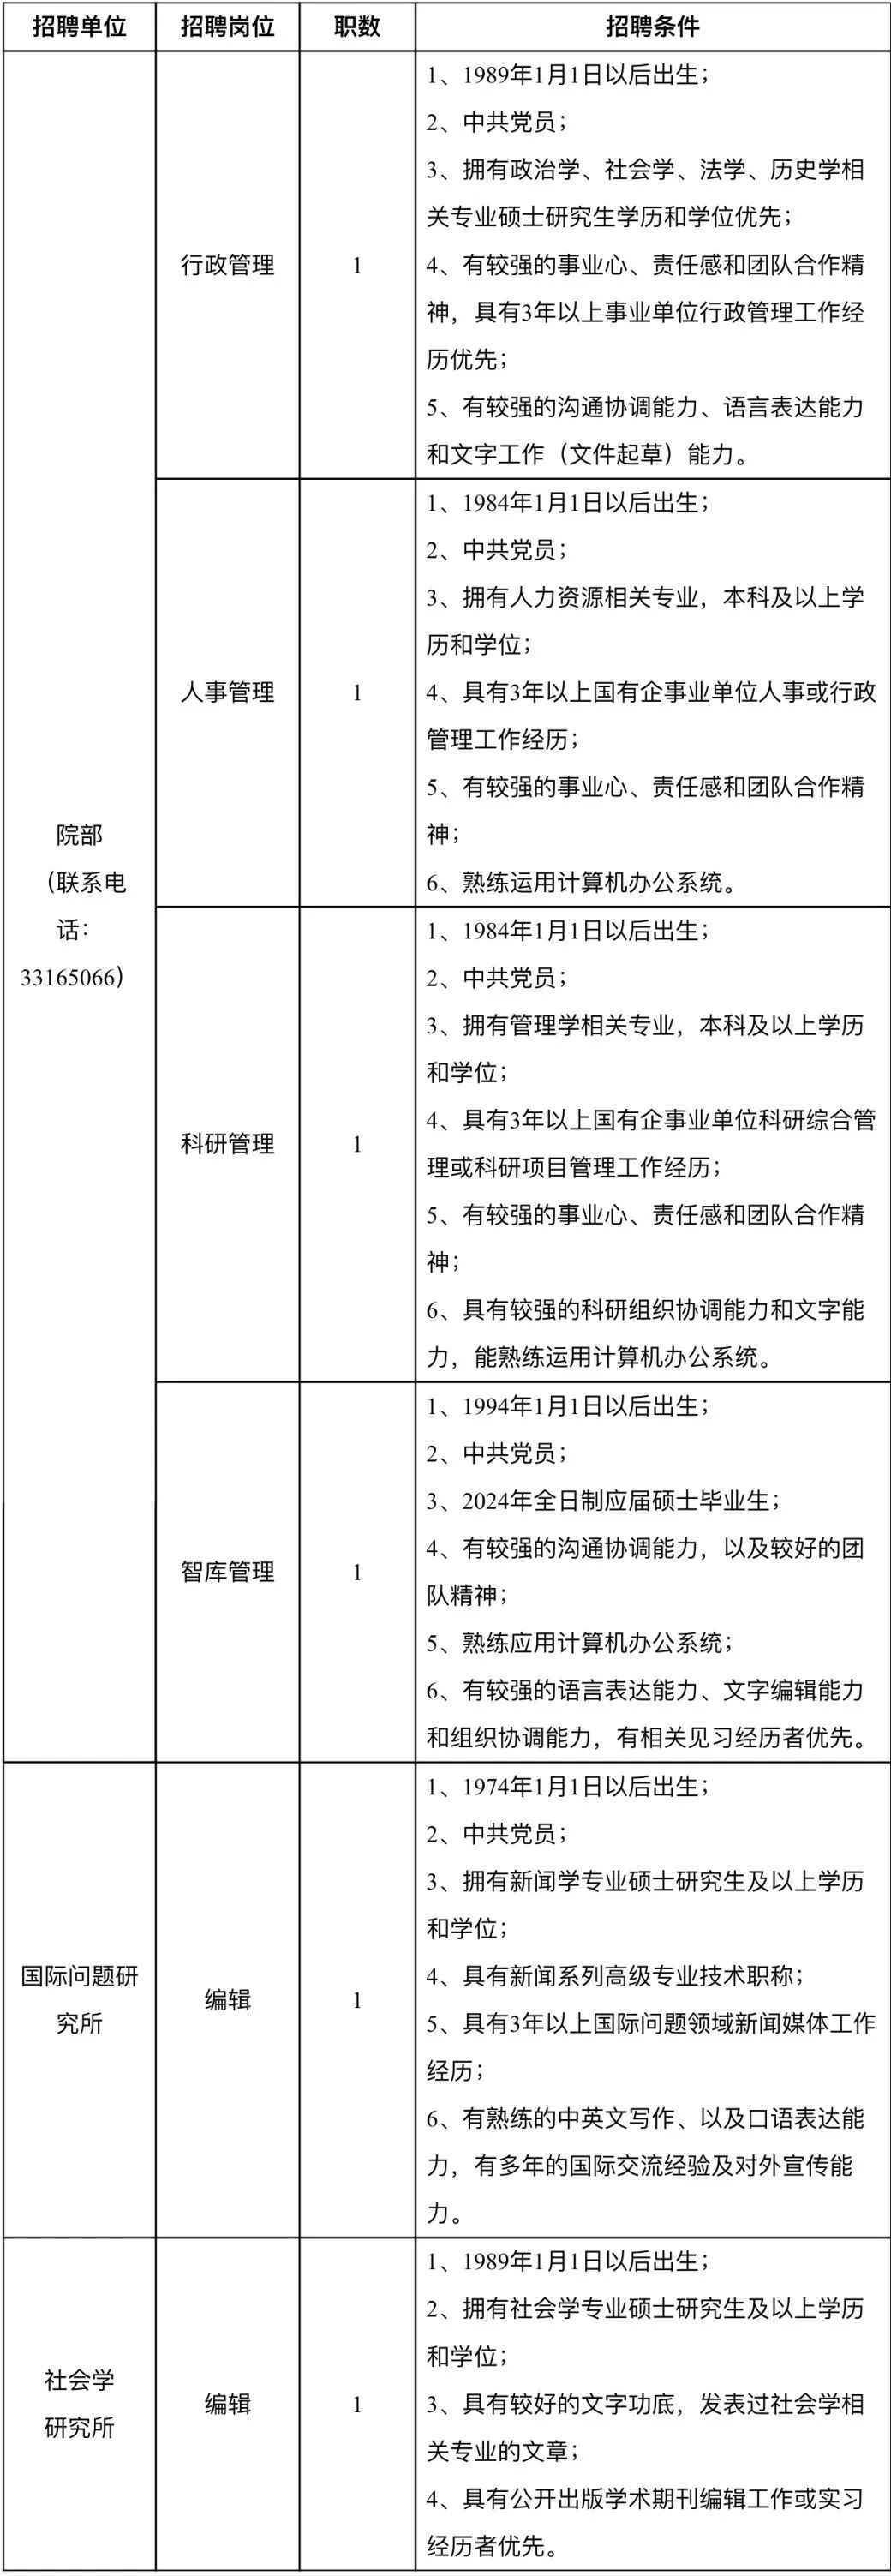 上海社会科学院公开招聘21名工作人员4月30日报名截止